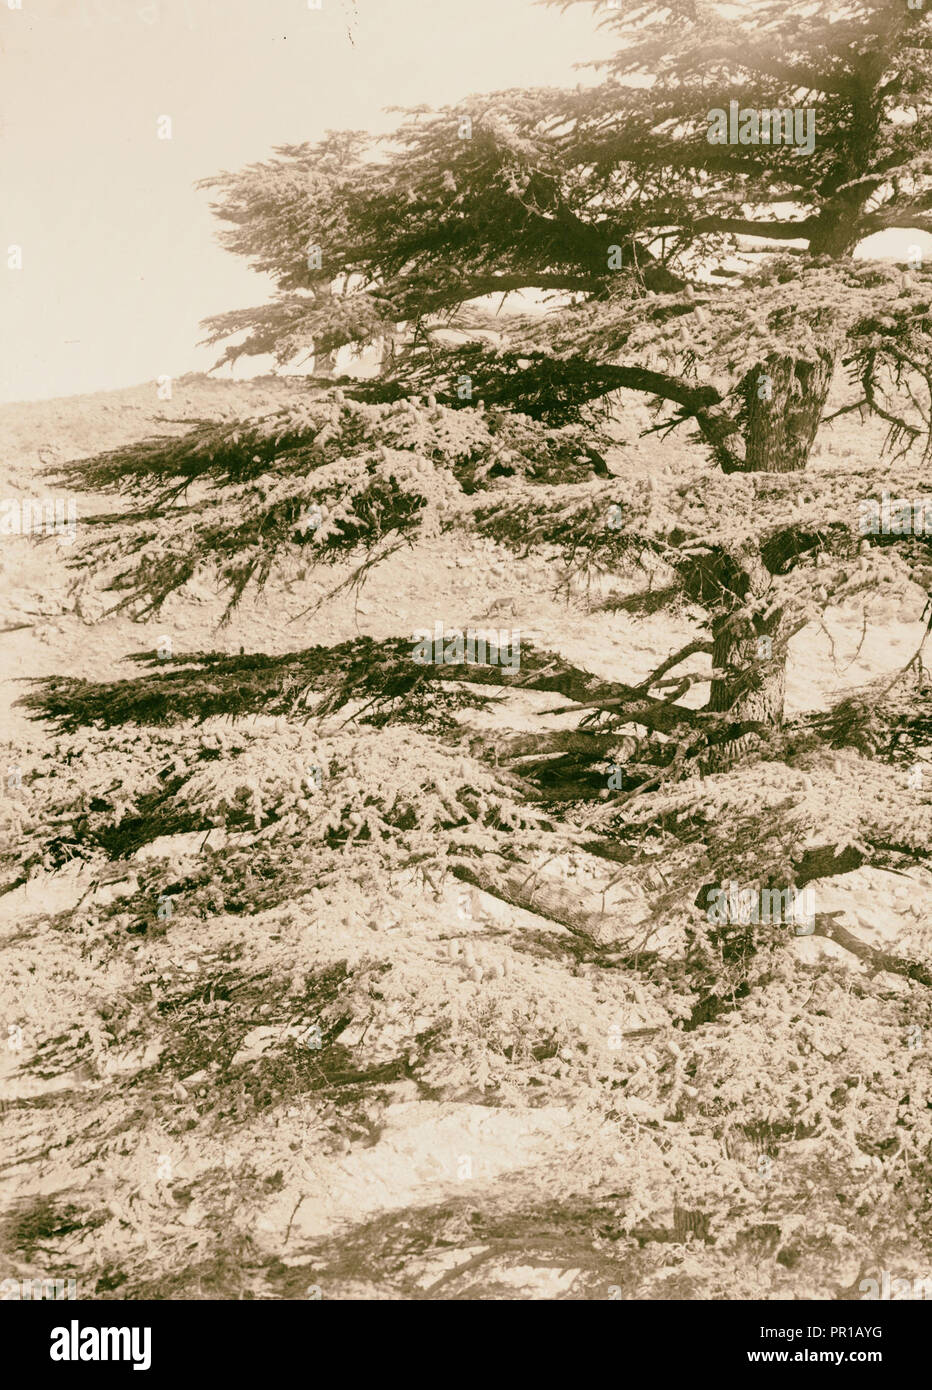 The cedars of Lebanon, Cedrus Libani Barr. Cedar branches with cones. 1900, Lebanon Stock Photo